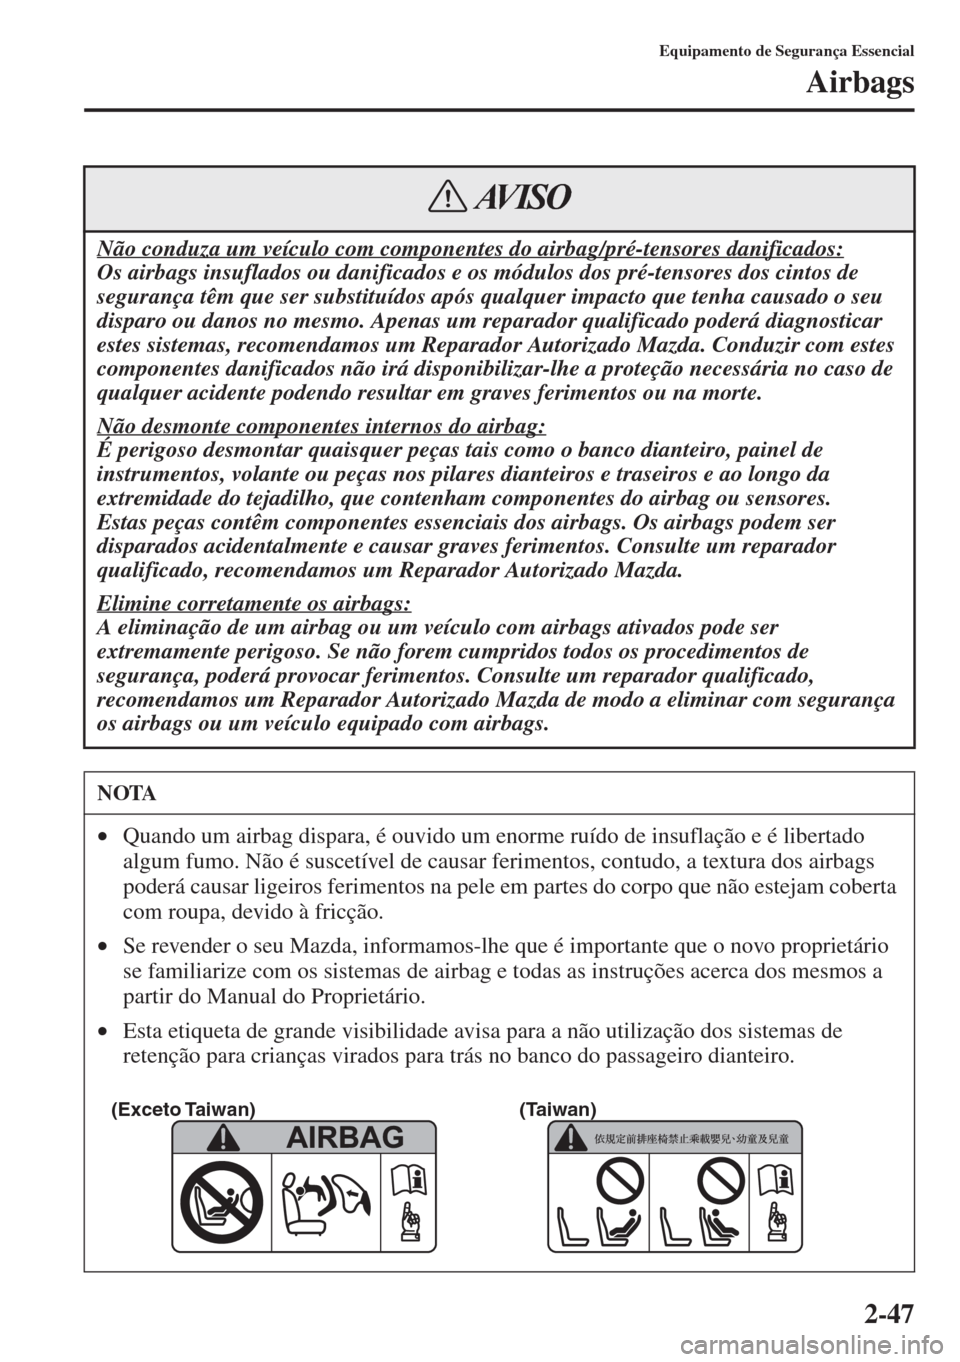 MAZDA MODEL CX-5 2015  Manual do proprietário (in Portuguese) 2-47
Equipamento de Segurança Essencial
Airbags
Não conduza um veículo com componentes do airbag/pré-tensores danificados:
Os airbags insuflados ou danificados e os módulos dos pré-tensores dos 